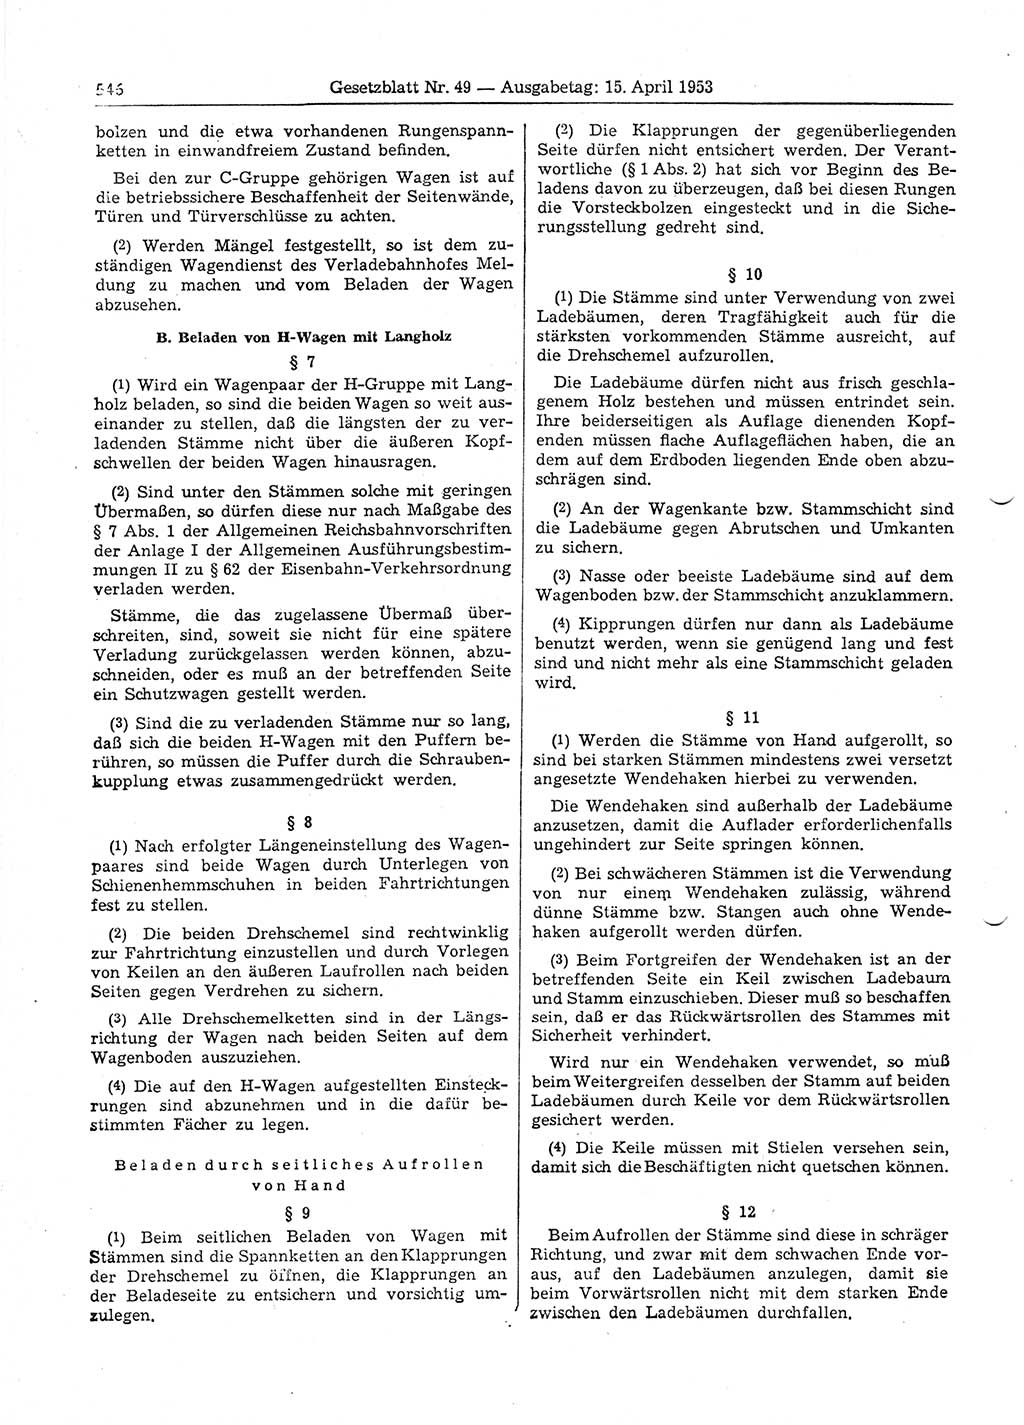 Gesetzblatt (GBl.) der Deutschen Demokratischen Republik (DDR) 1953, Seite 546 (GBl. DDR 1953, S. 546)